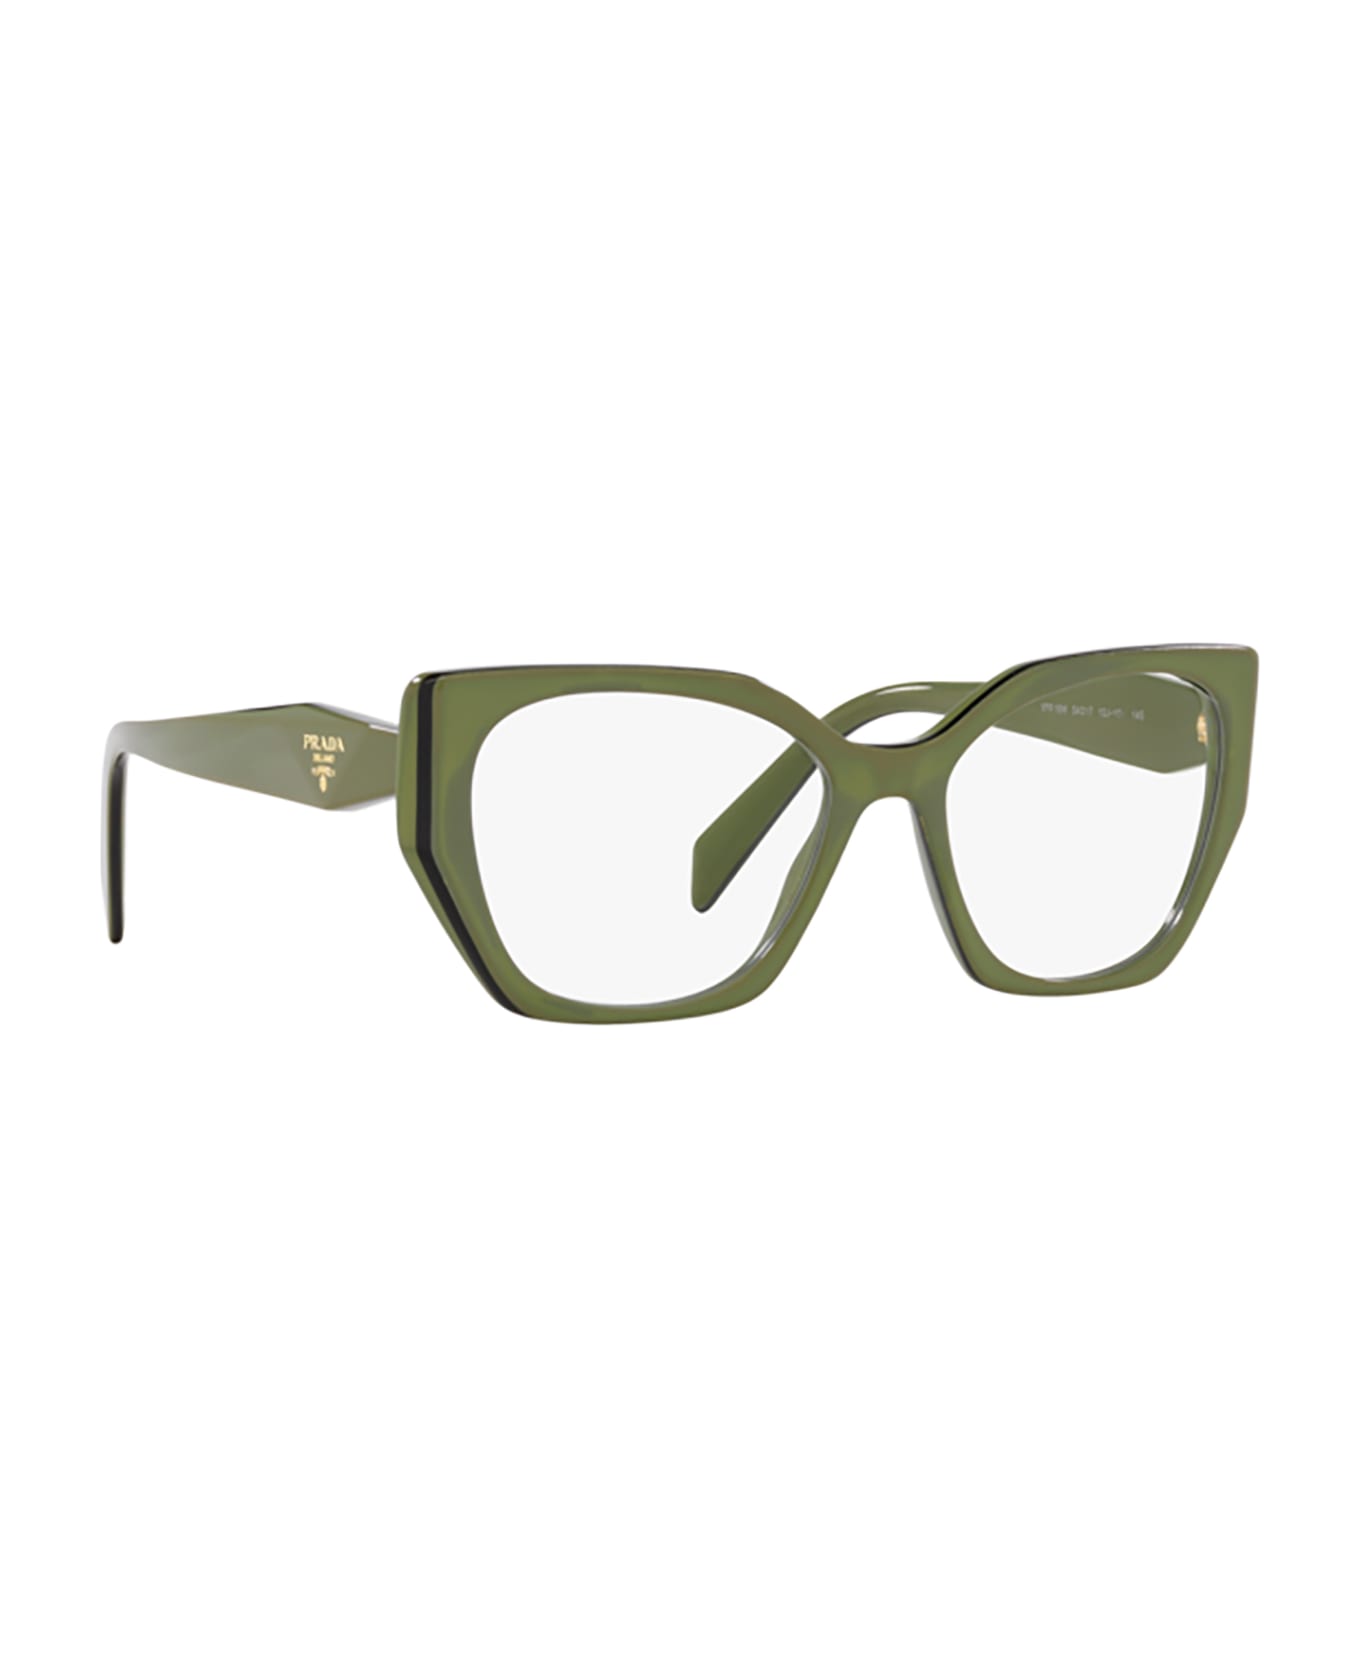 Prada Eyewear Pr 18wv Sage / Black Glasses - Sage / Black